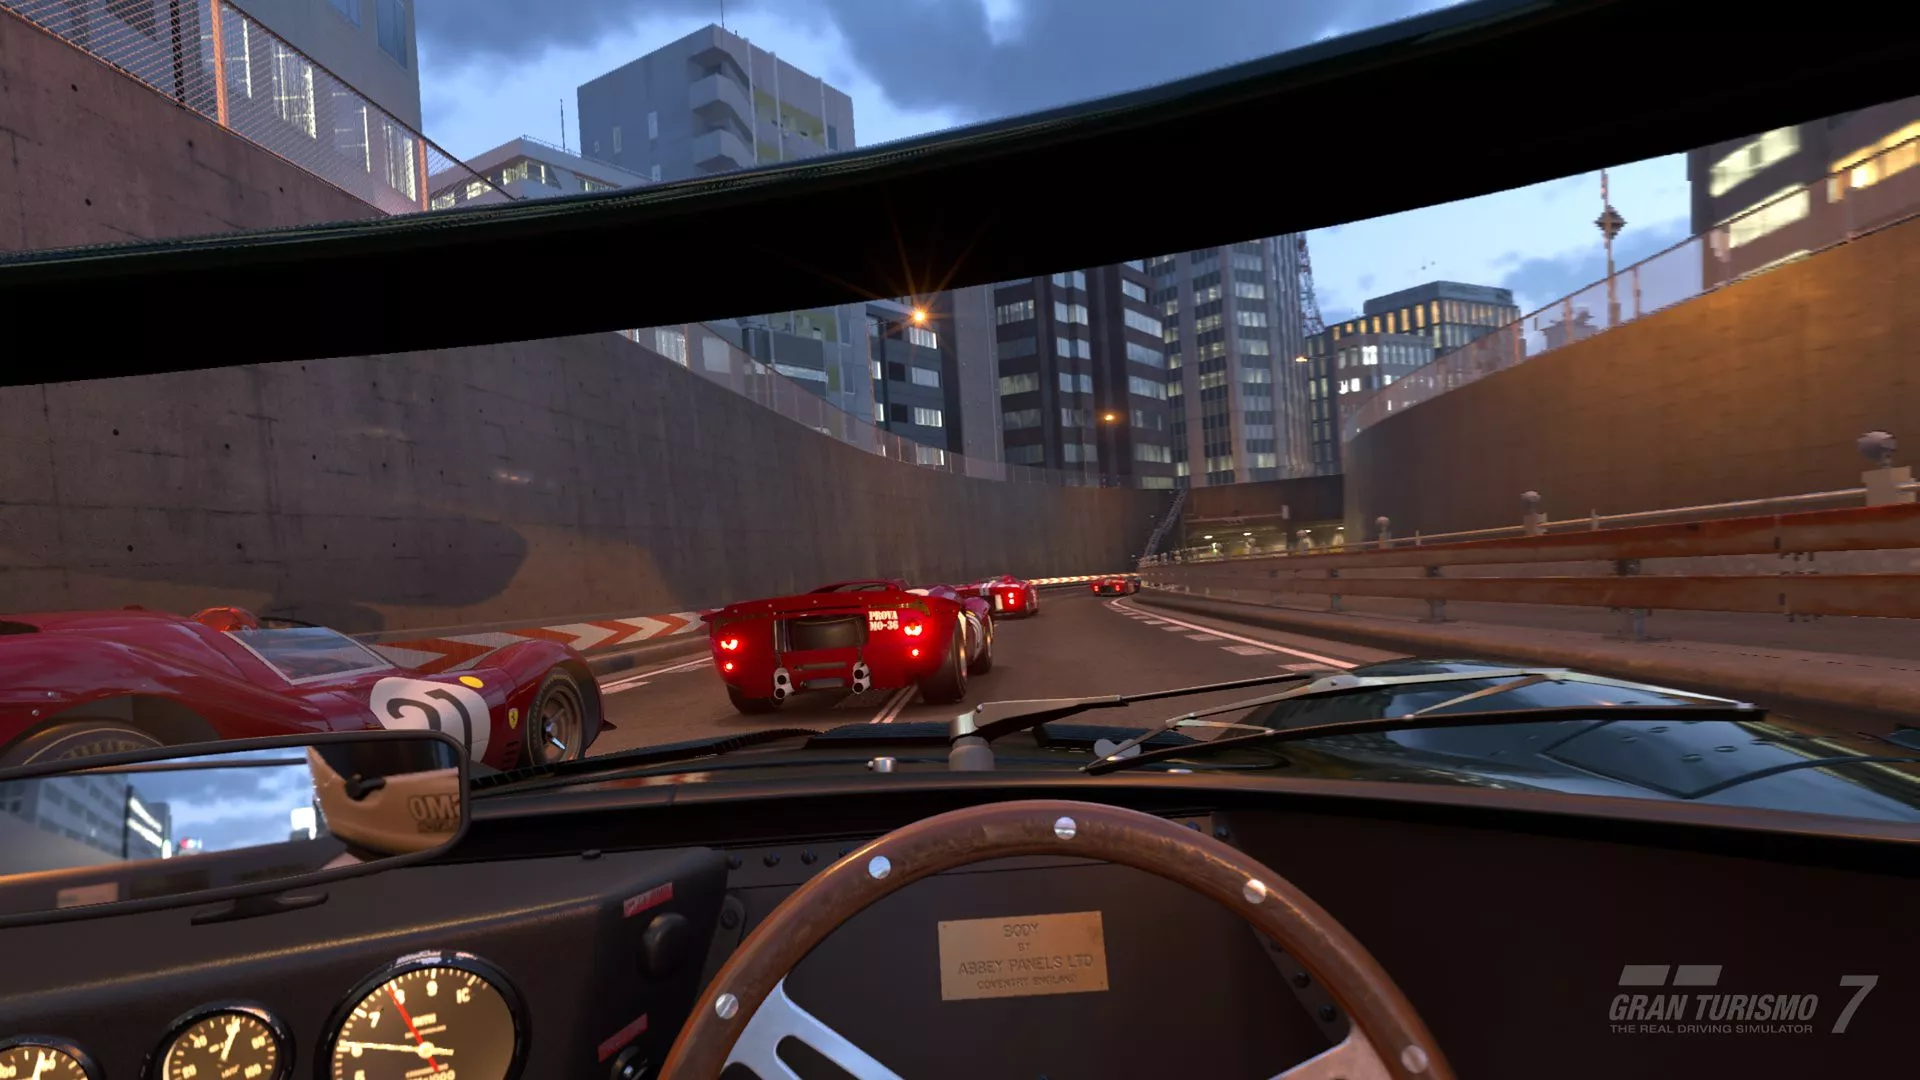 Gran Turismo 7: Update 1.29 integriert den VR-Modus ins Spiel Heropic